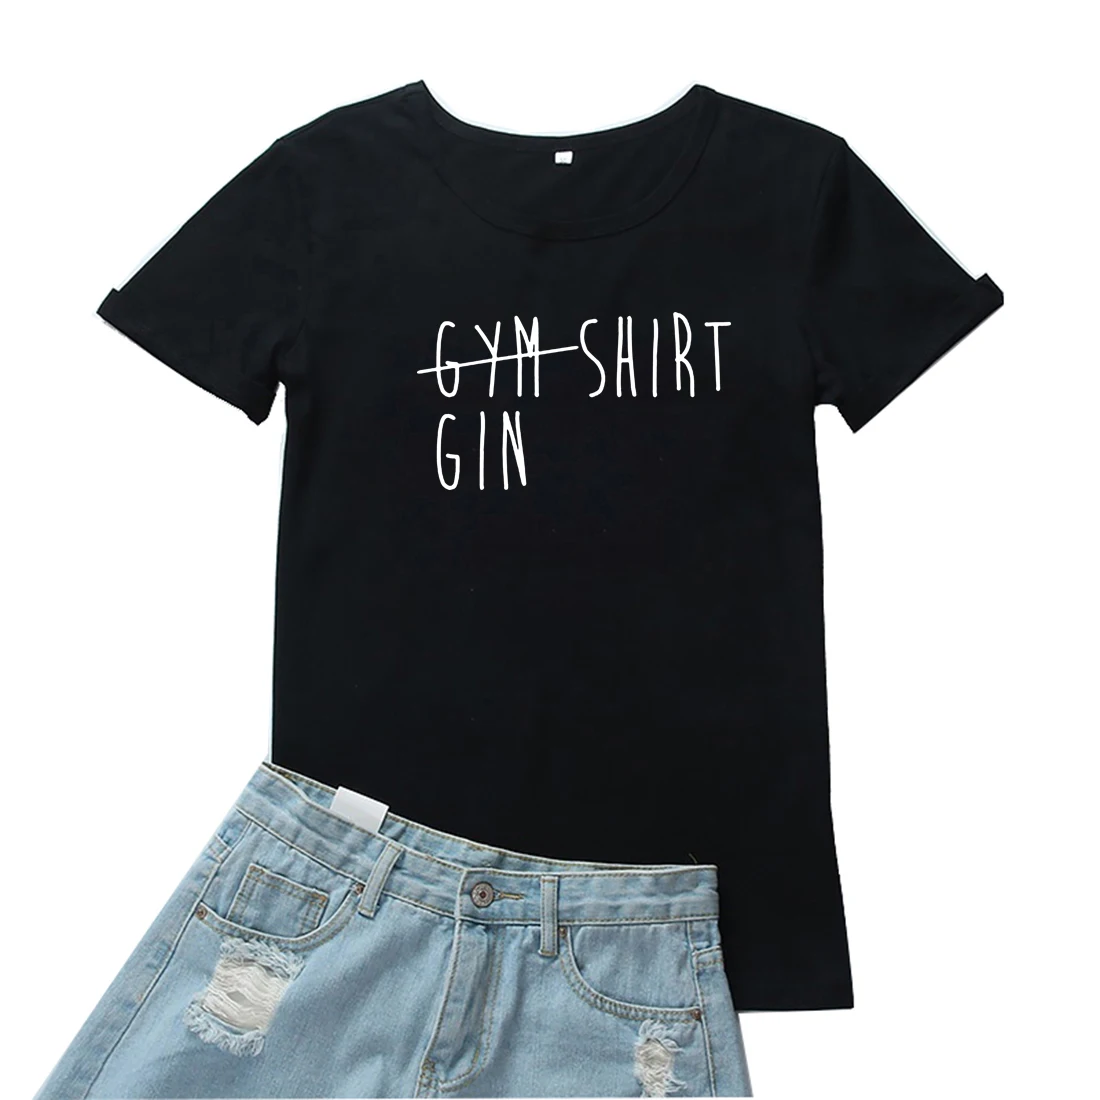 Nicht Gym Shirt Ist Gin T-shirt Frauen Lustige Brief Drucken Grafik T Shirt für Frauen Fahion Oansatz Camisetas Mujer Lose frauen T